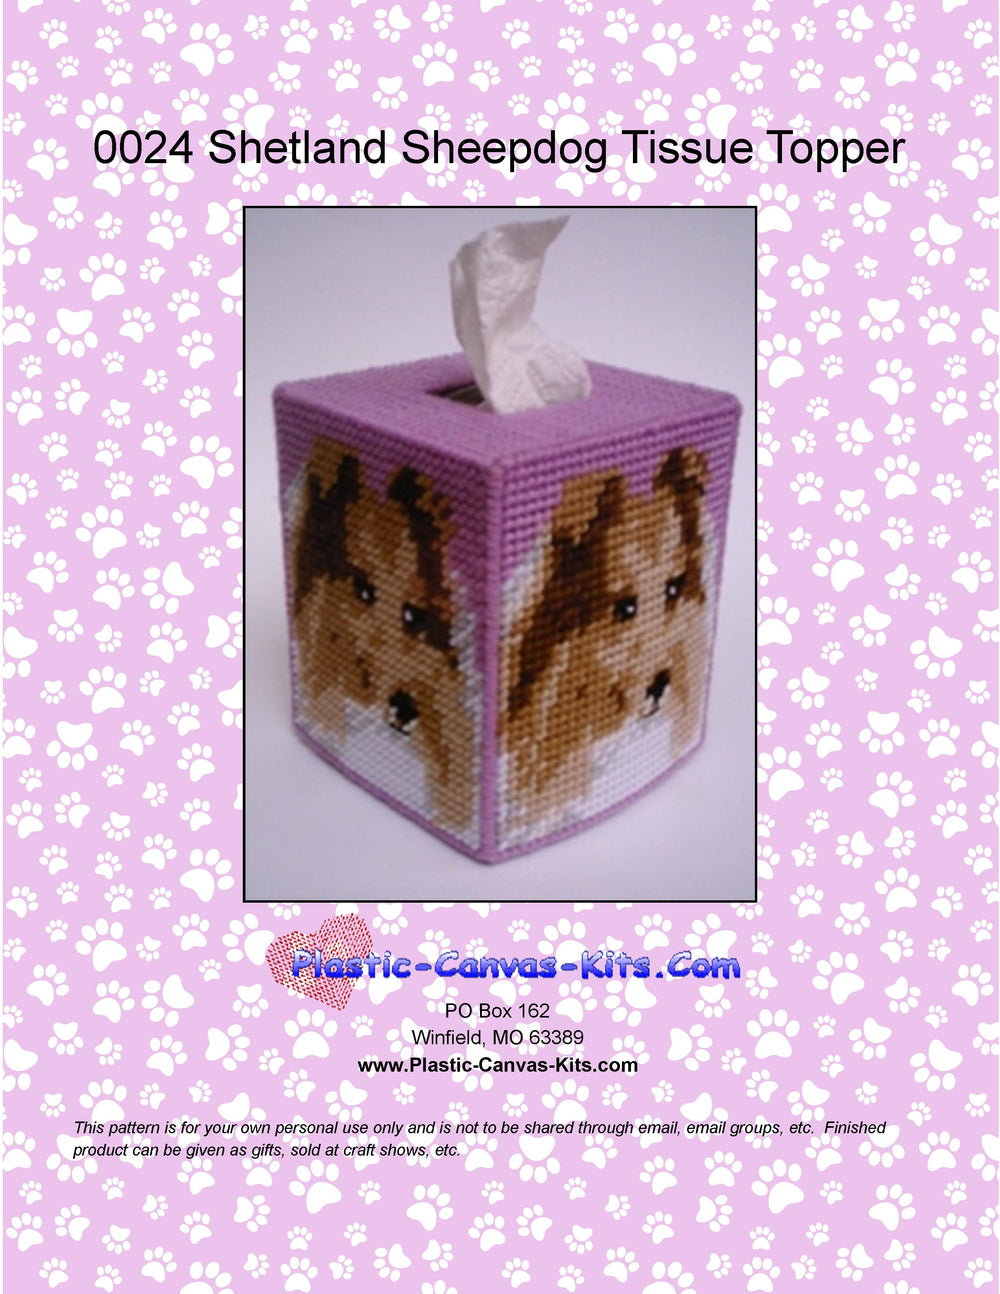 Shetland Sheepdog Tissue Topper